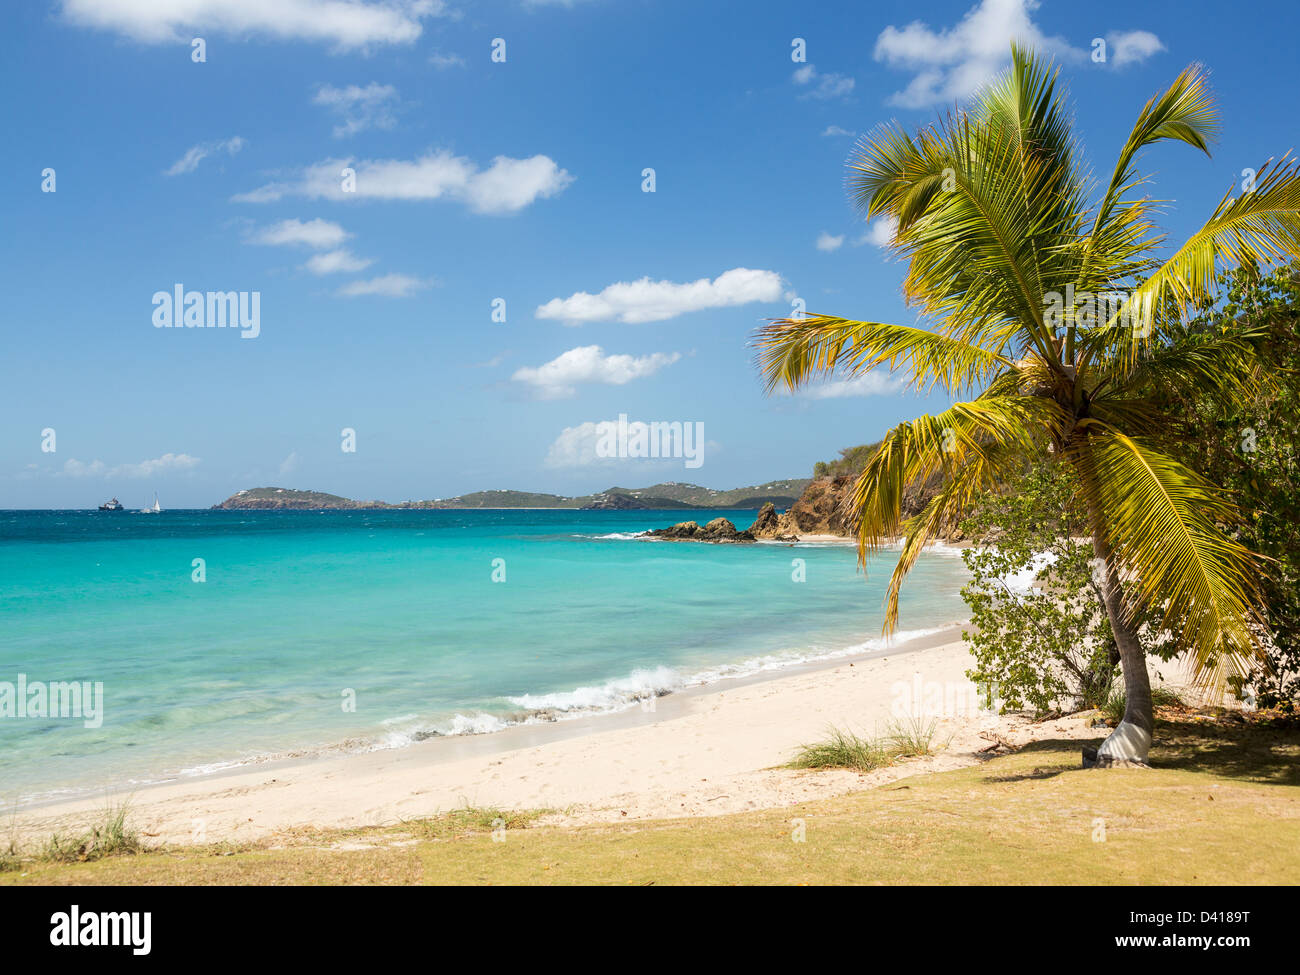 Scène de plage sur l'île de Saint Thomas dans les îles Vierges américaines ILES VIERGES AMÉRICAINES avec palmier Banque D'Images